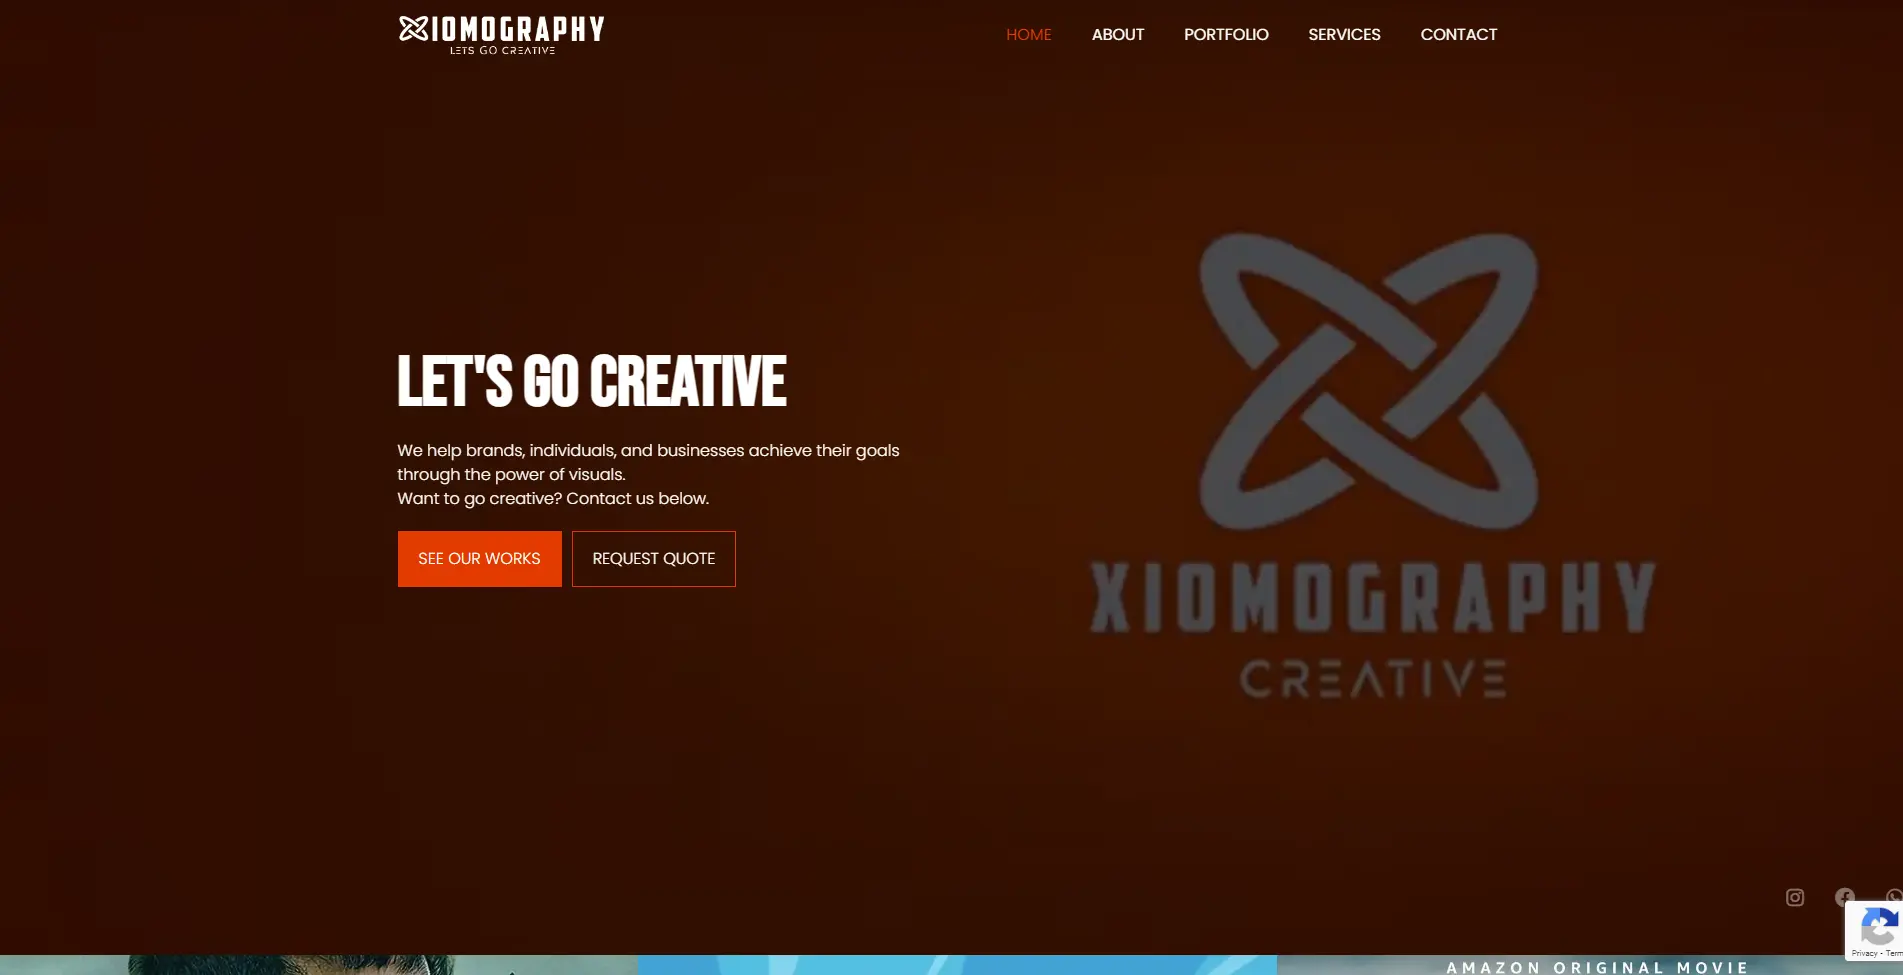 Xiomography-Creative